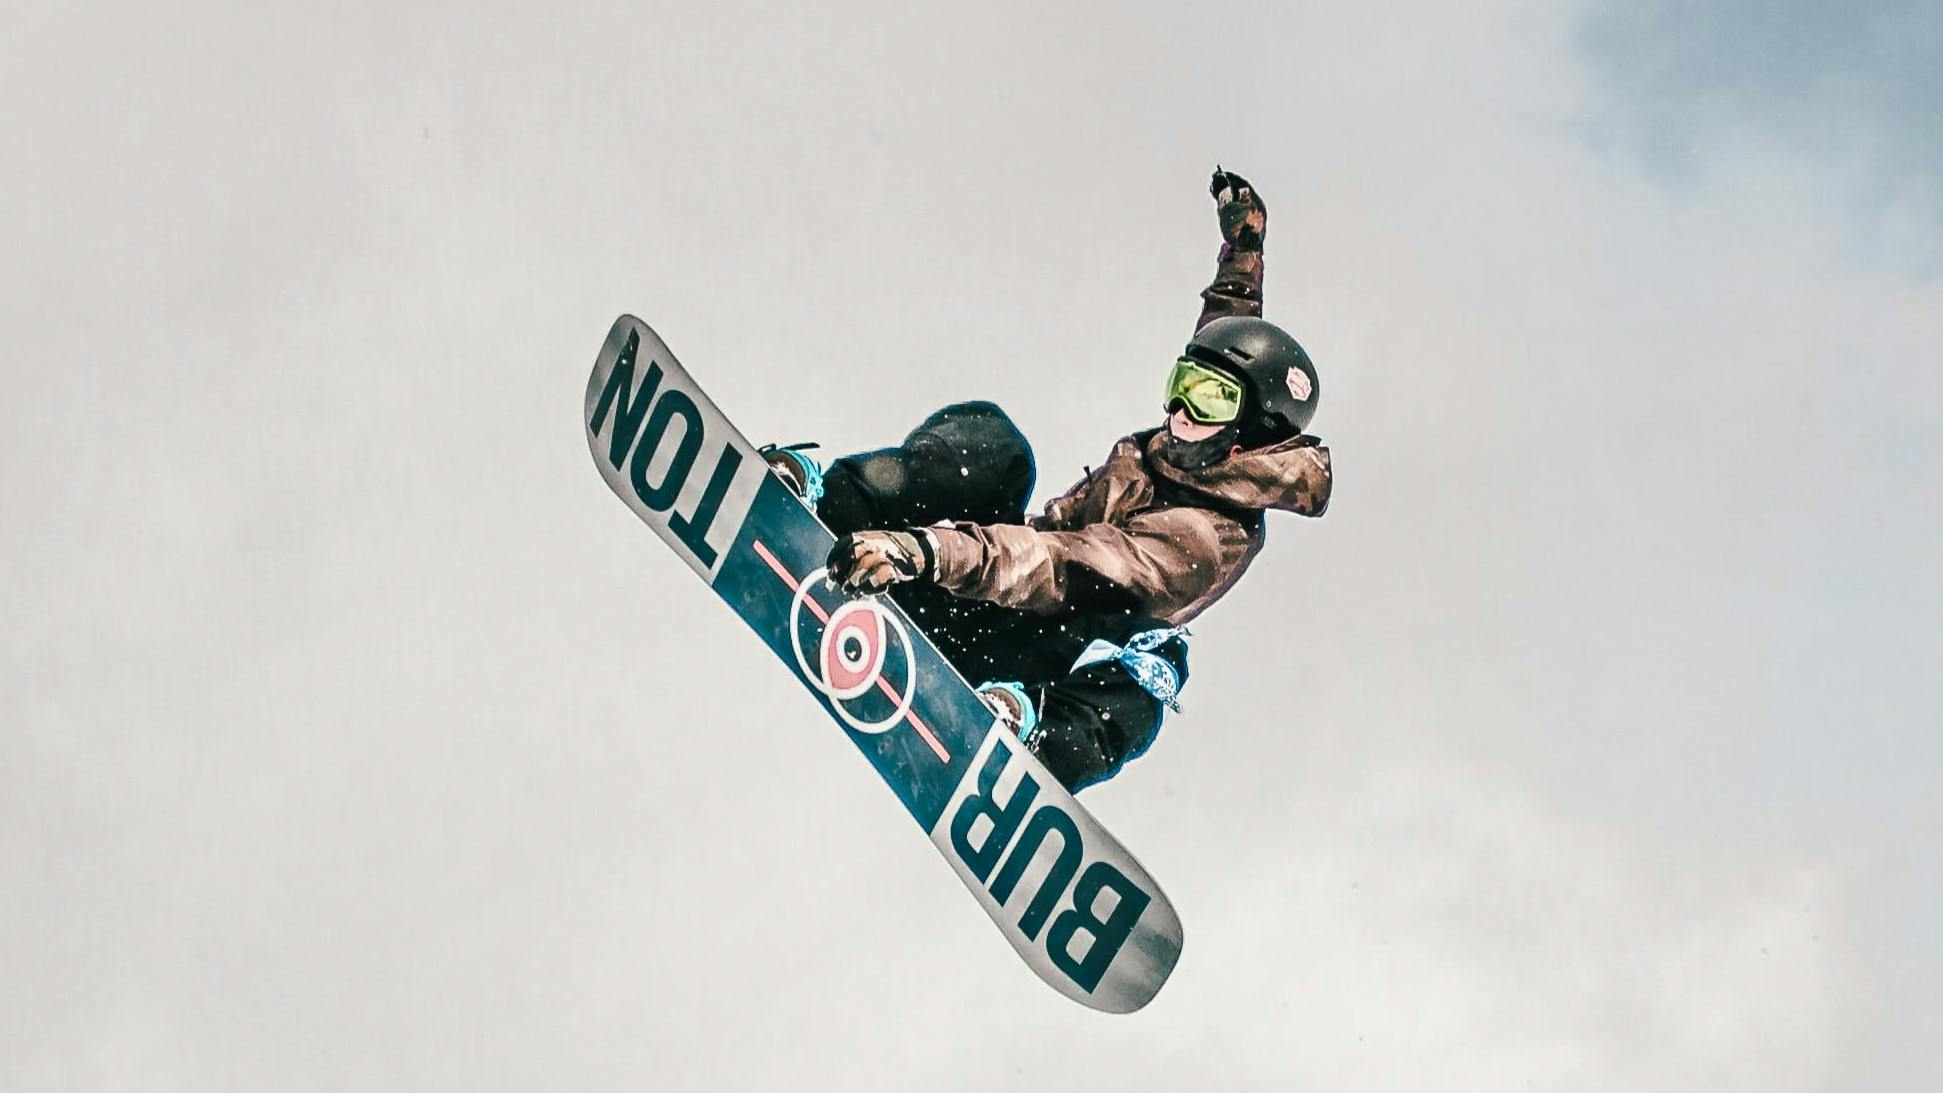 Snowboarder doing a jump on a Burton board.